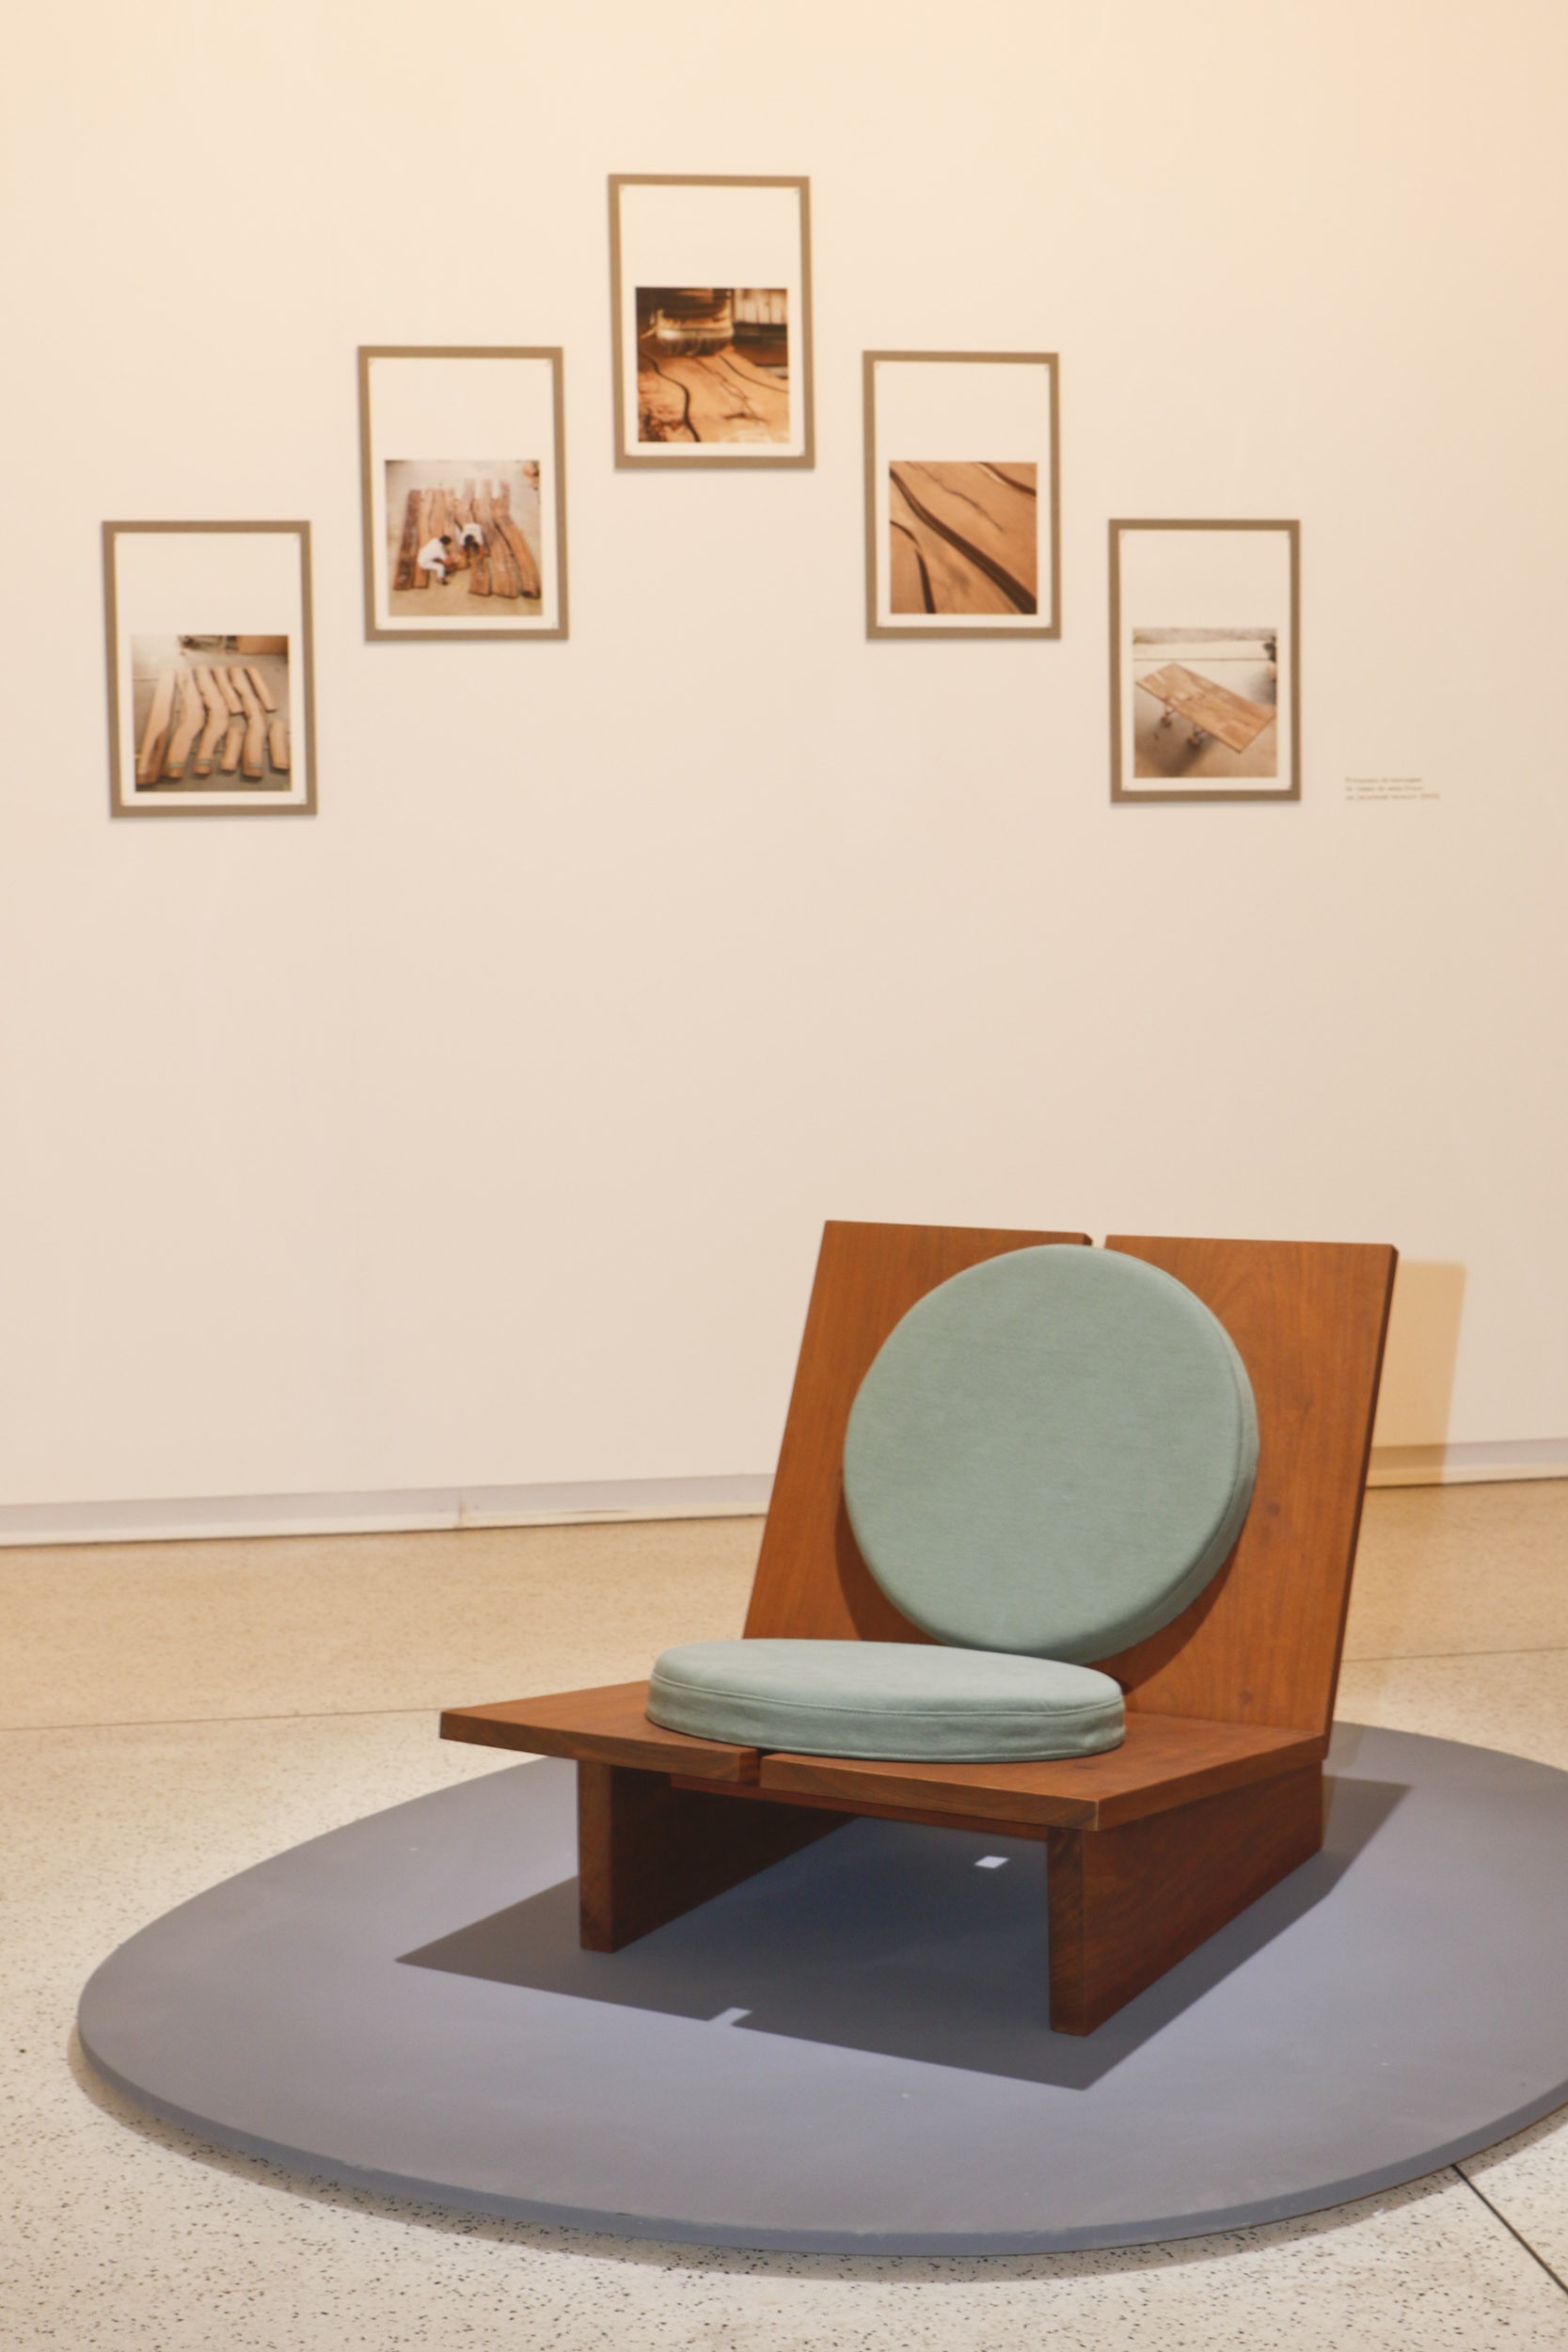 Museu Oscar Niemeyer realiza exposição inédita sobre o trabalho da designer Claudia Moreira Salles (Foto: Antônio More)